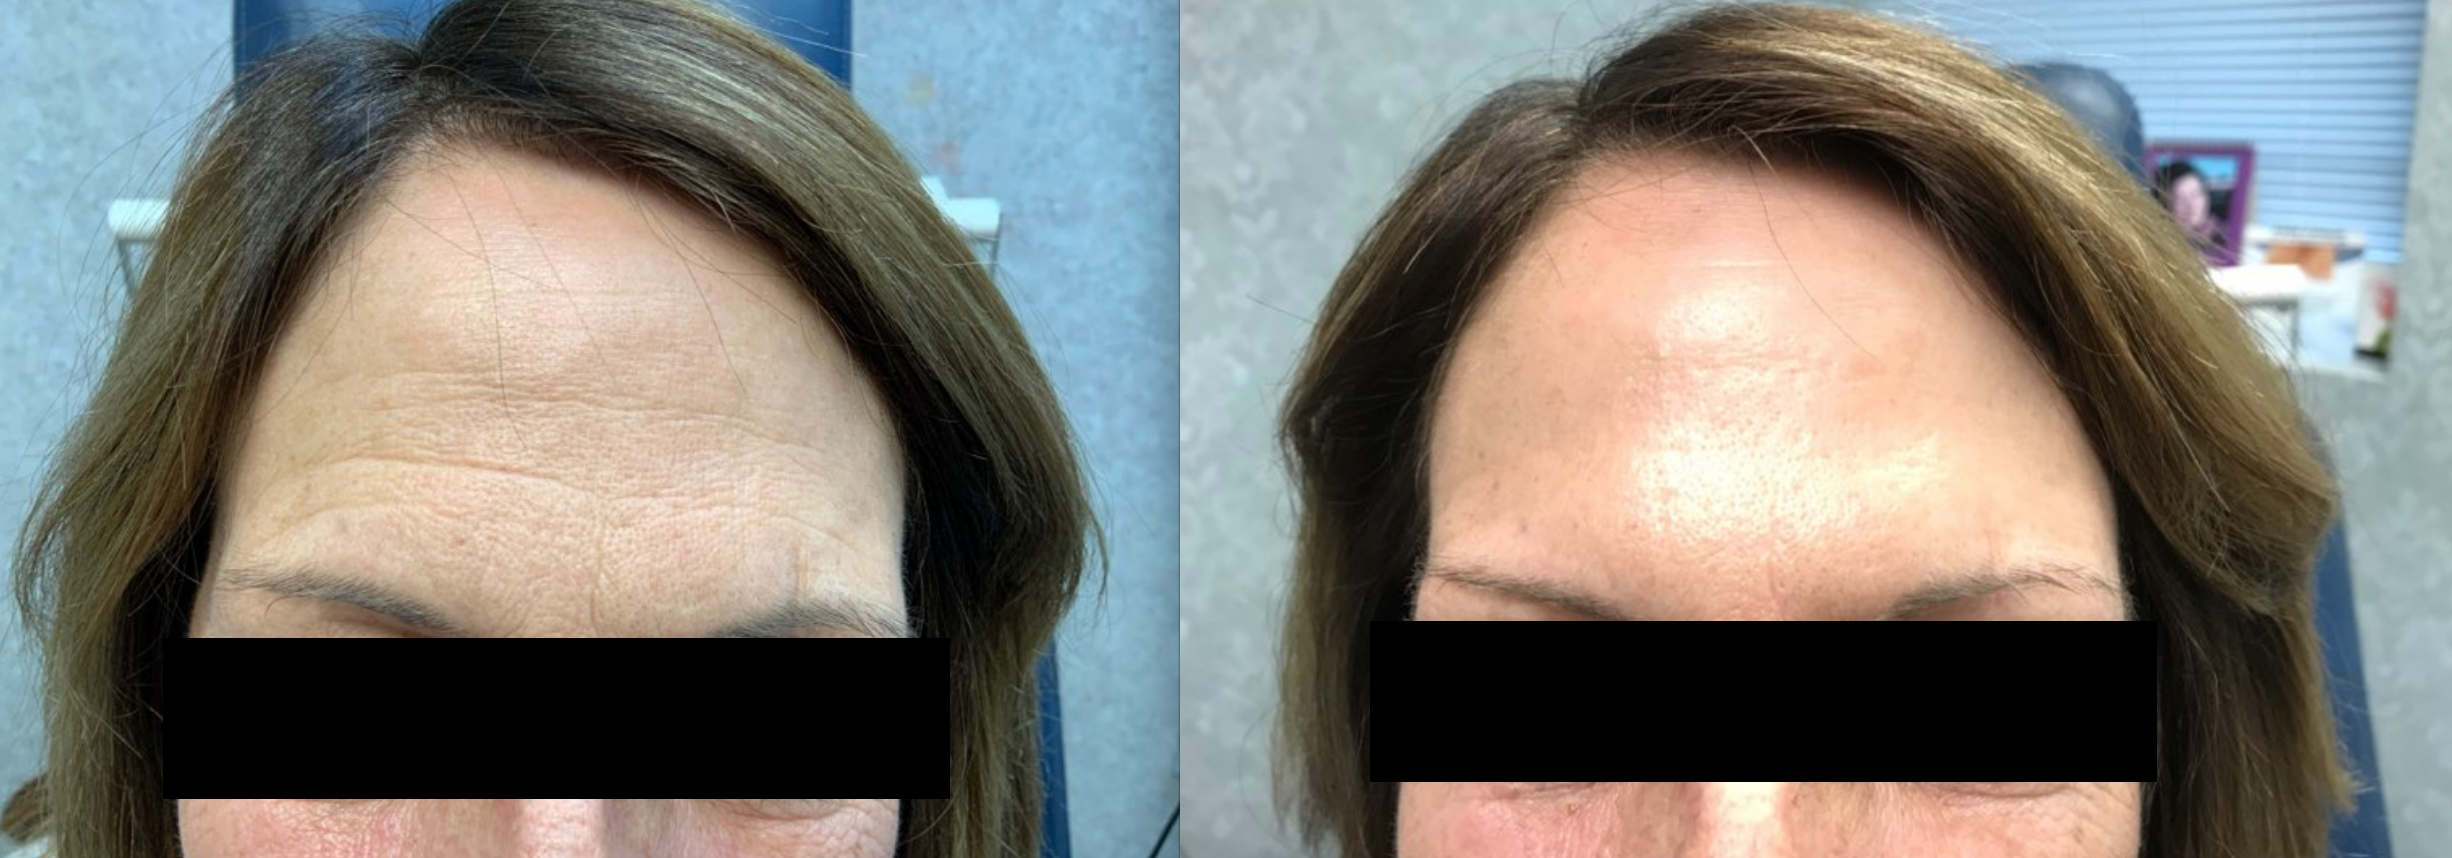 D Reinsch Before and After Botox_